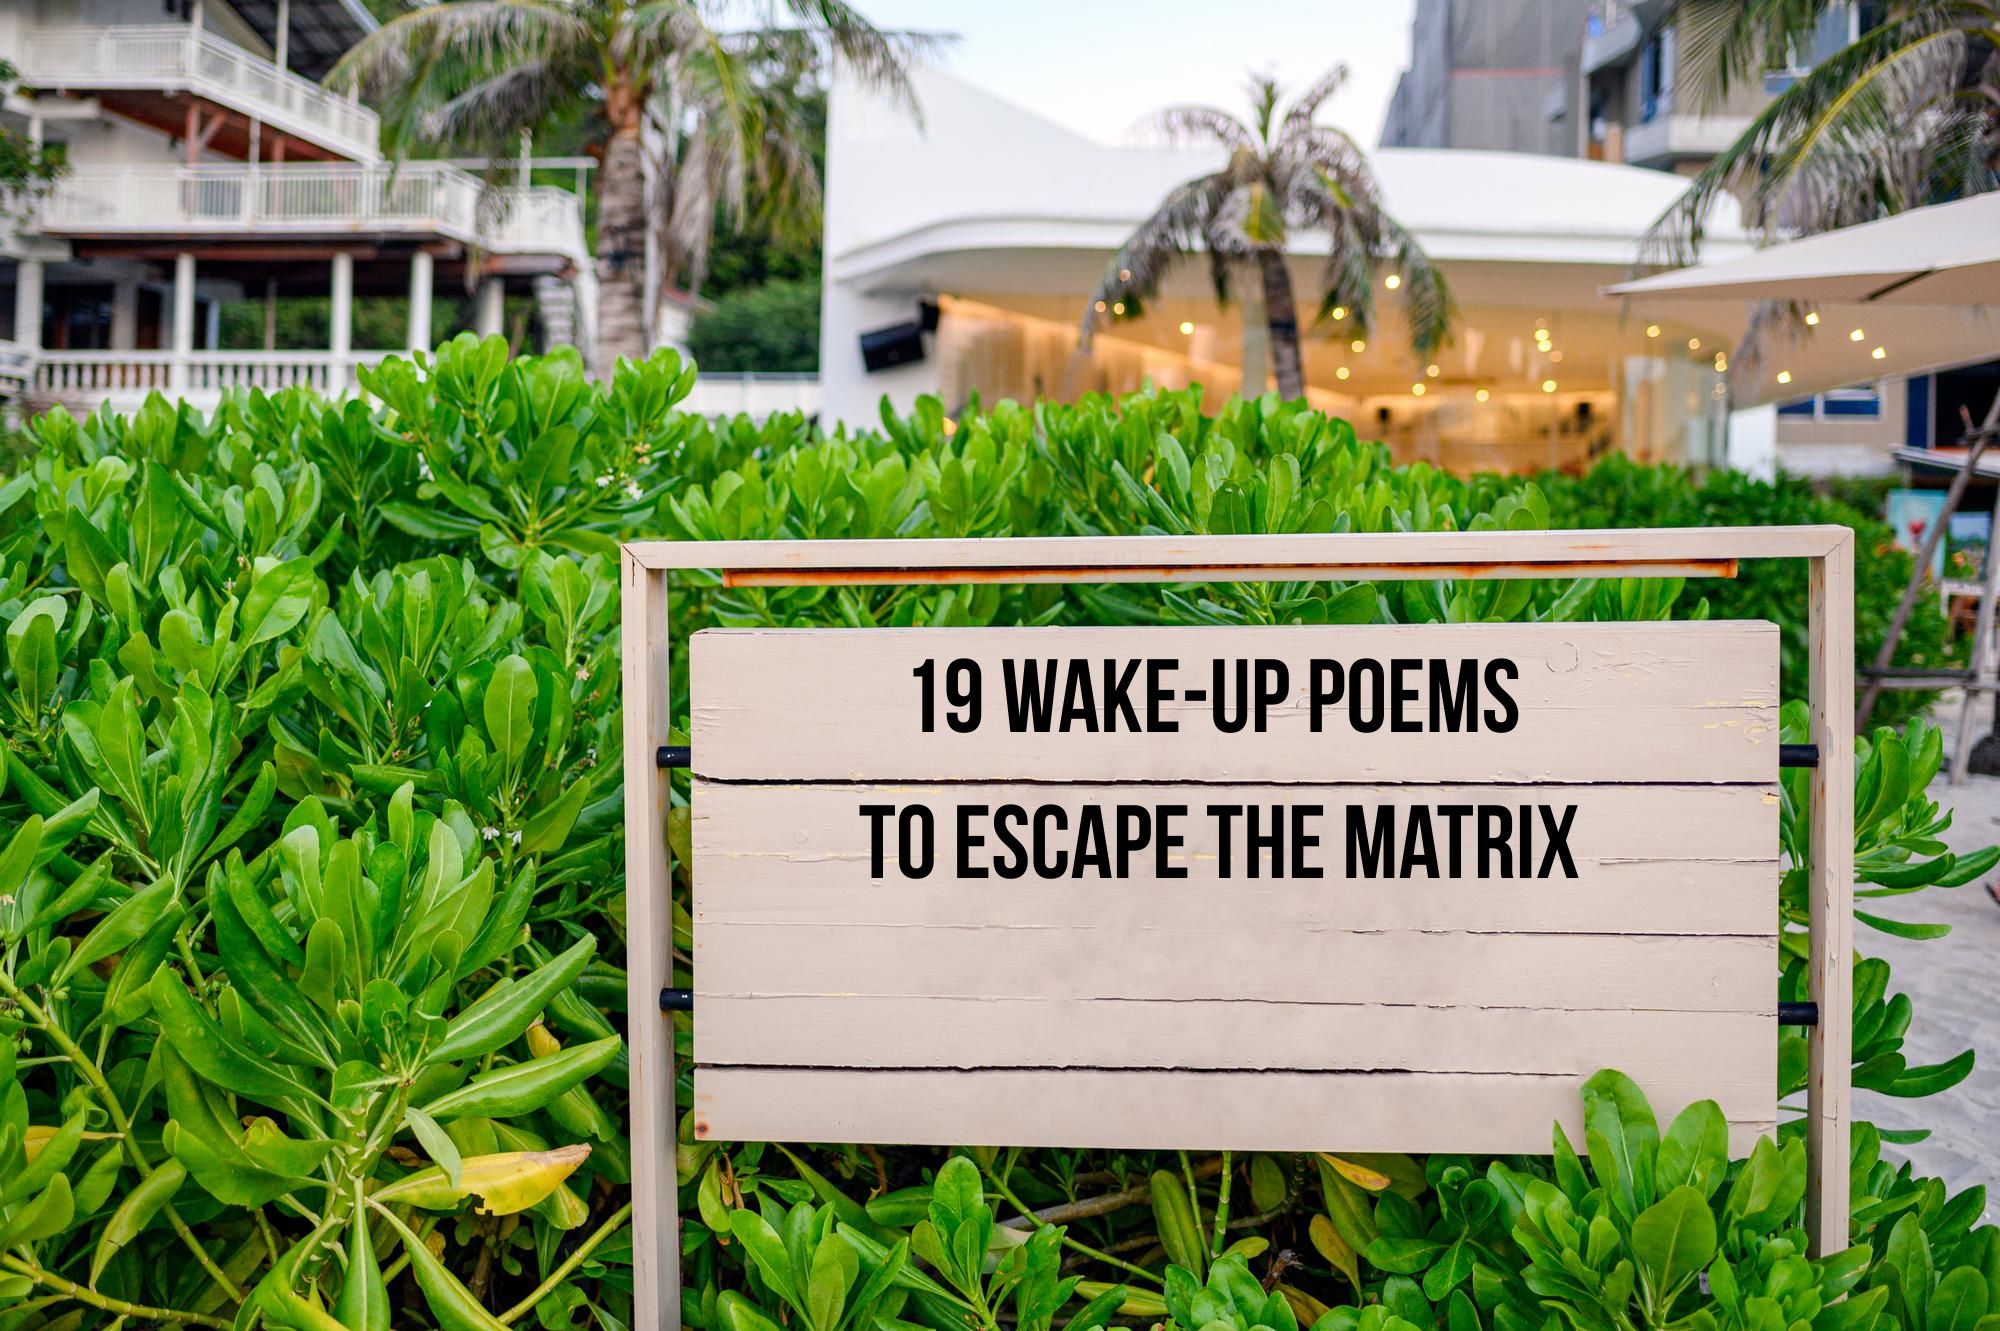 19 Poems to escape the matrix